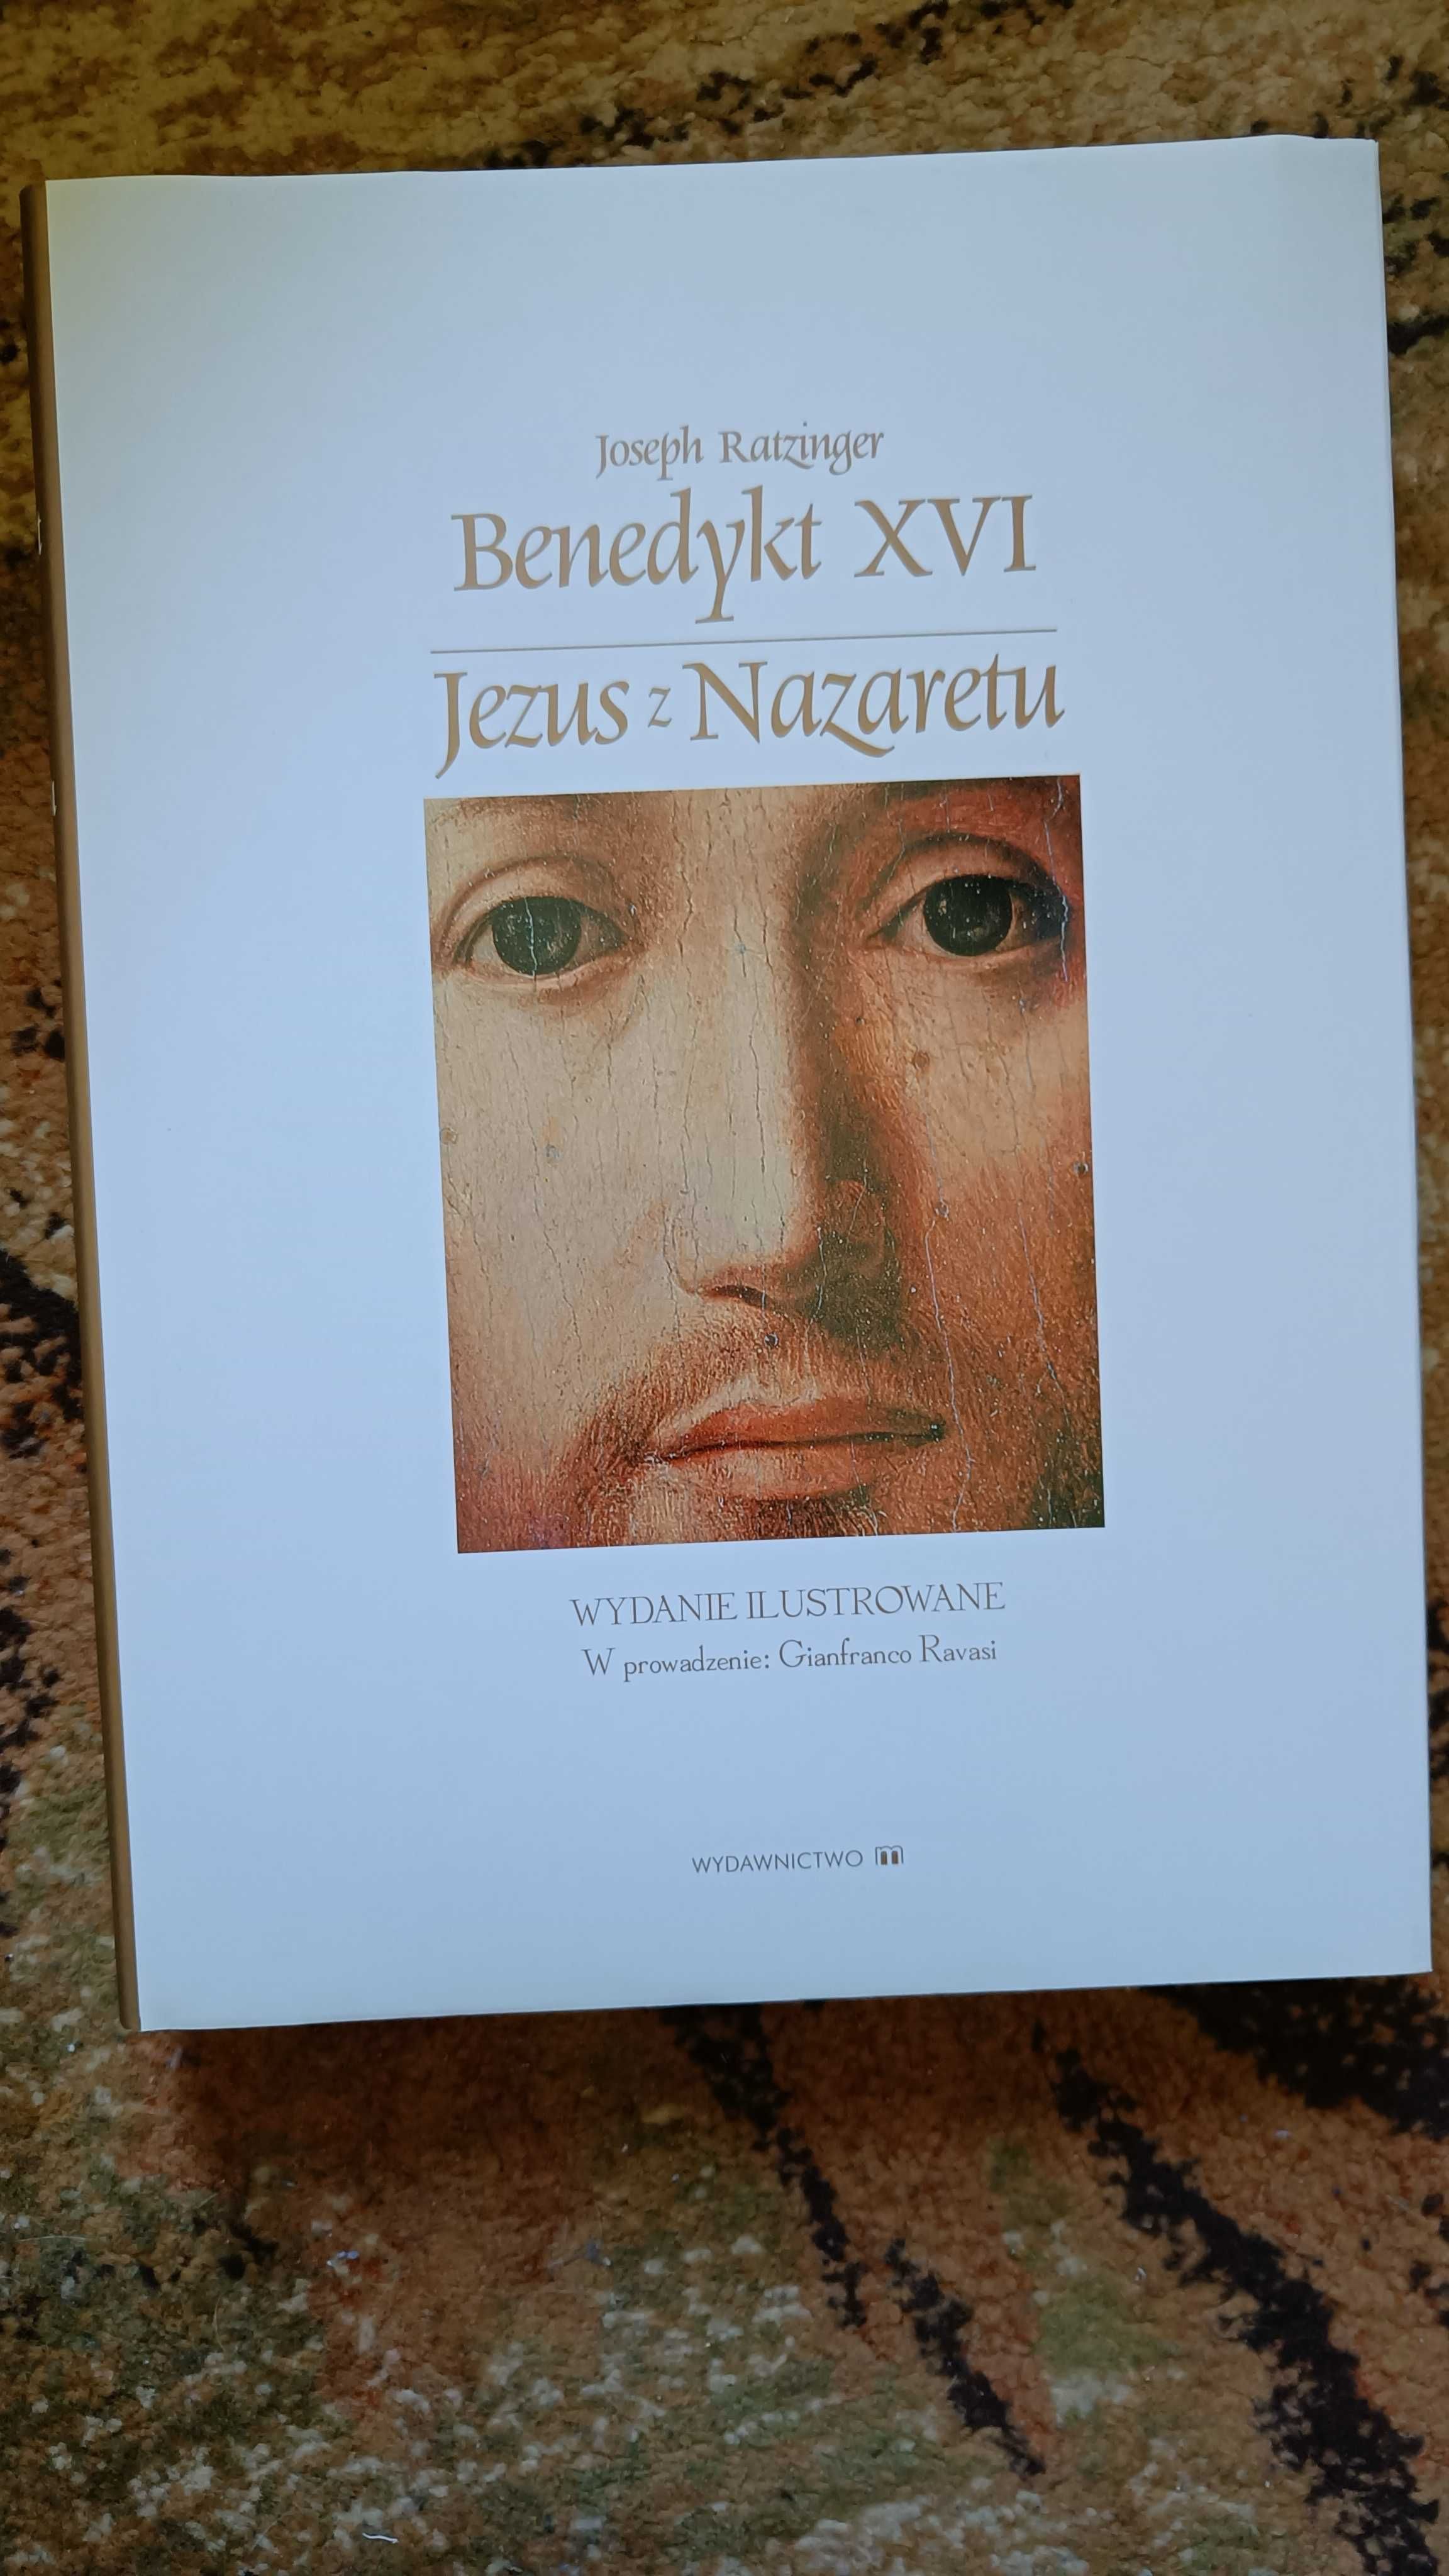 Jezus z Nazaretu (wydanie ilustrowane) - Benedykt XVI